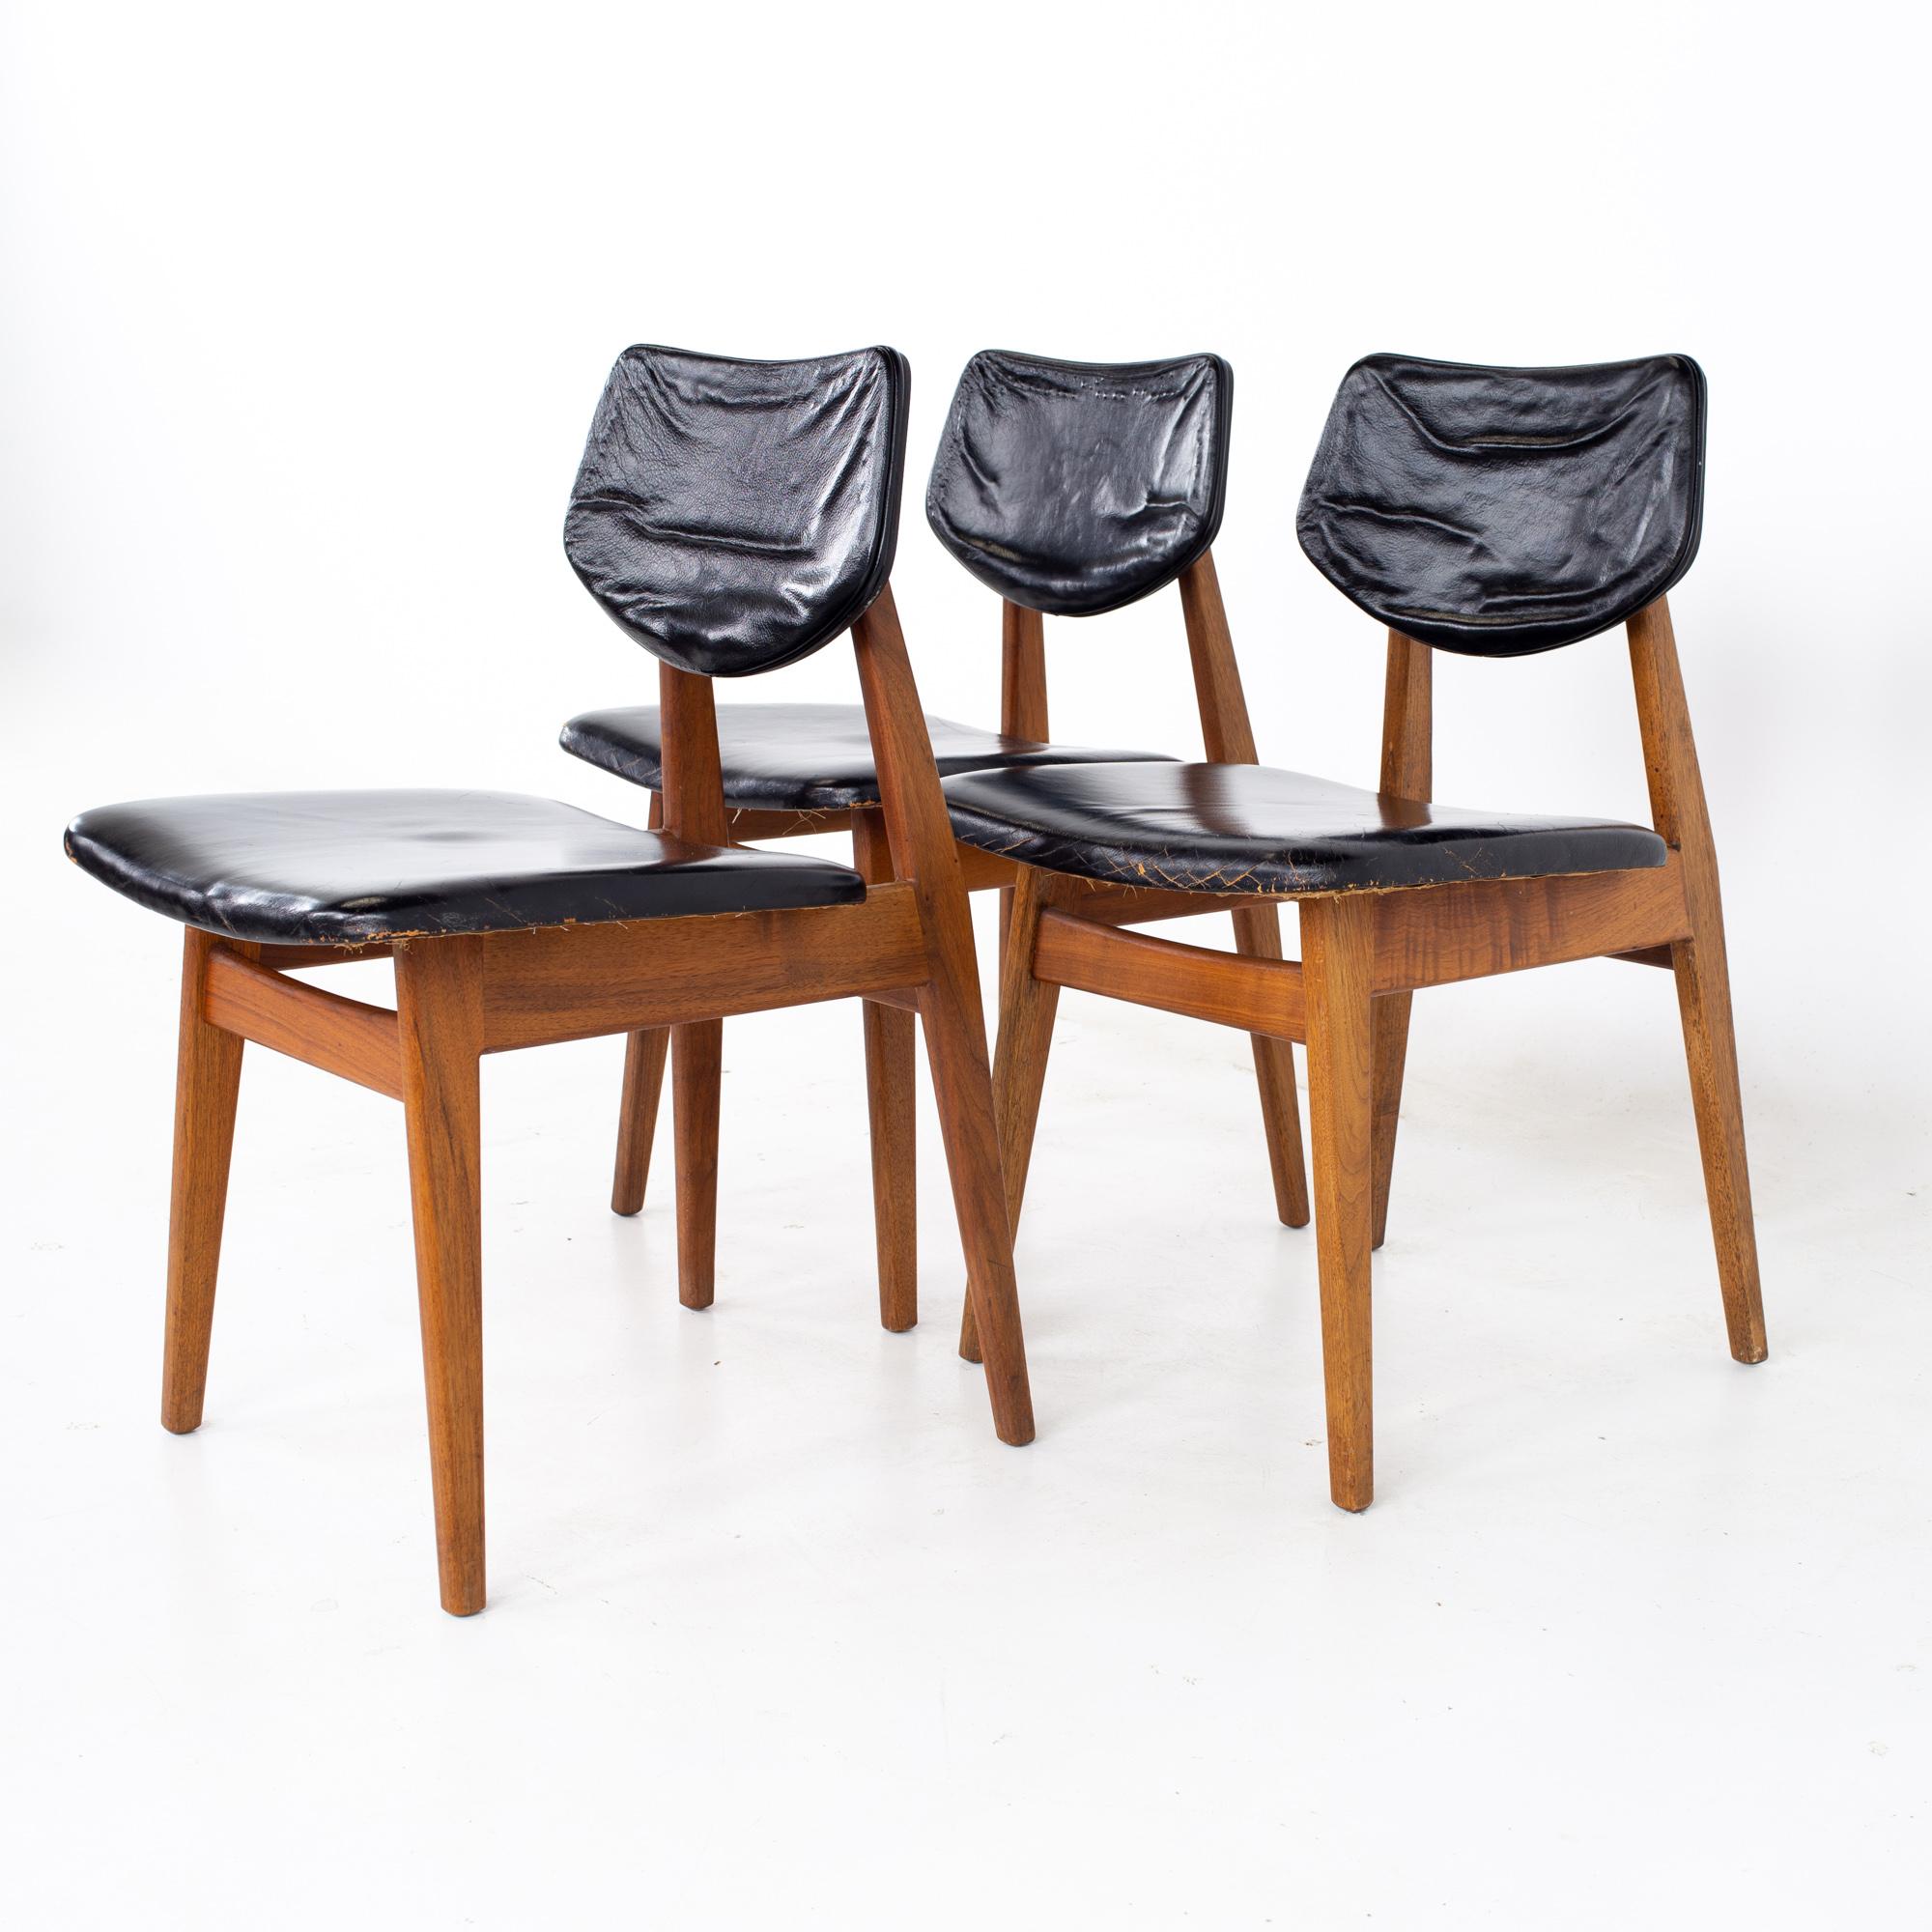 Jens Risom Esszimmerstühle aus Nussbaumholz aus der Mitte des Jahrhunderts - 3er-Set
Jeder Stuhl misst: 18 breit x 20,5 tief x 32 hoch, mit einer Sitzhöhe von 18,5 Zoll

Alle Möbelstücke sind in einem so genannten restaurierten Vintage-Zustand zu